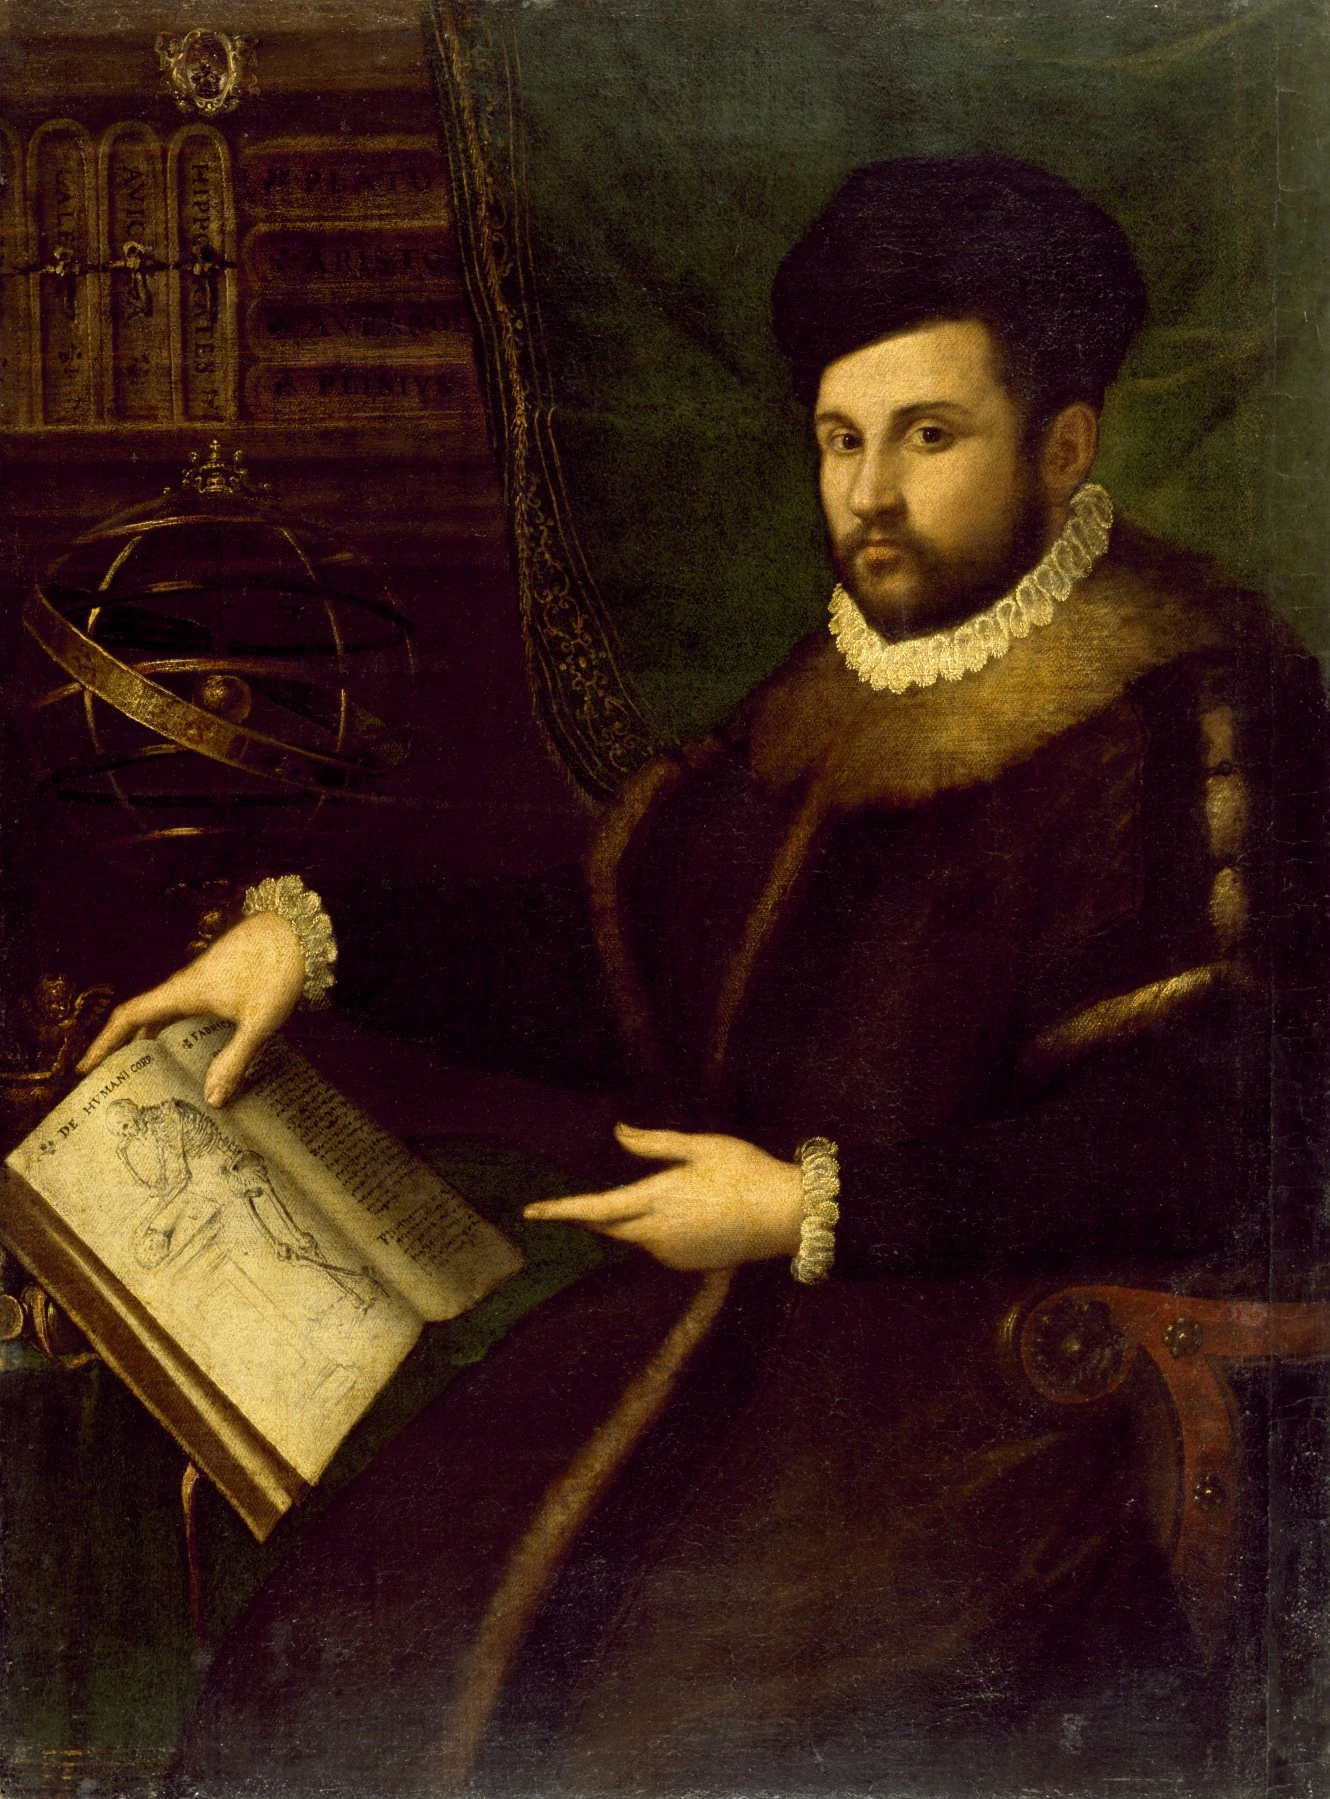 Portrait of Gerolamo Mercuriale, Lavinia Fontana